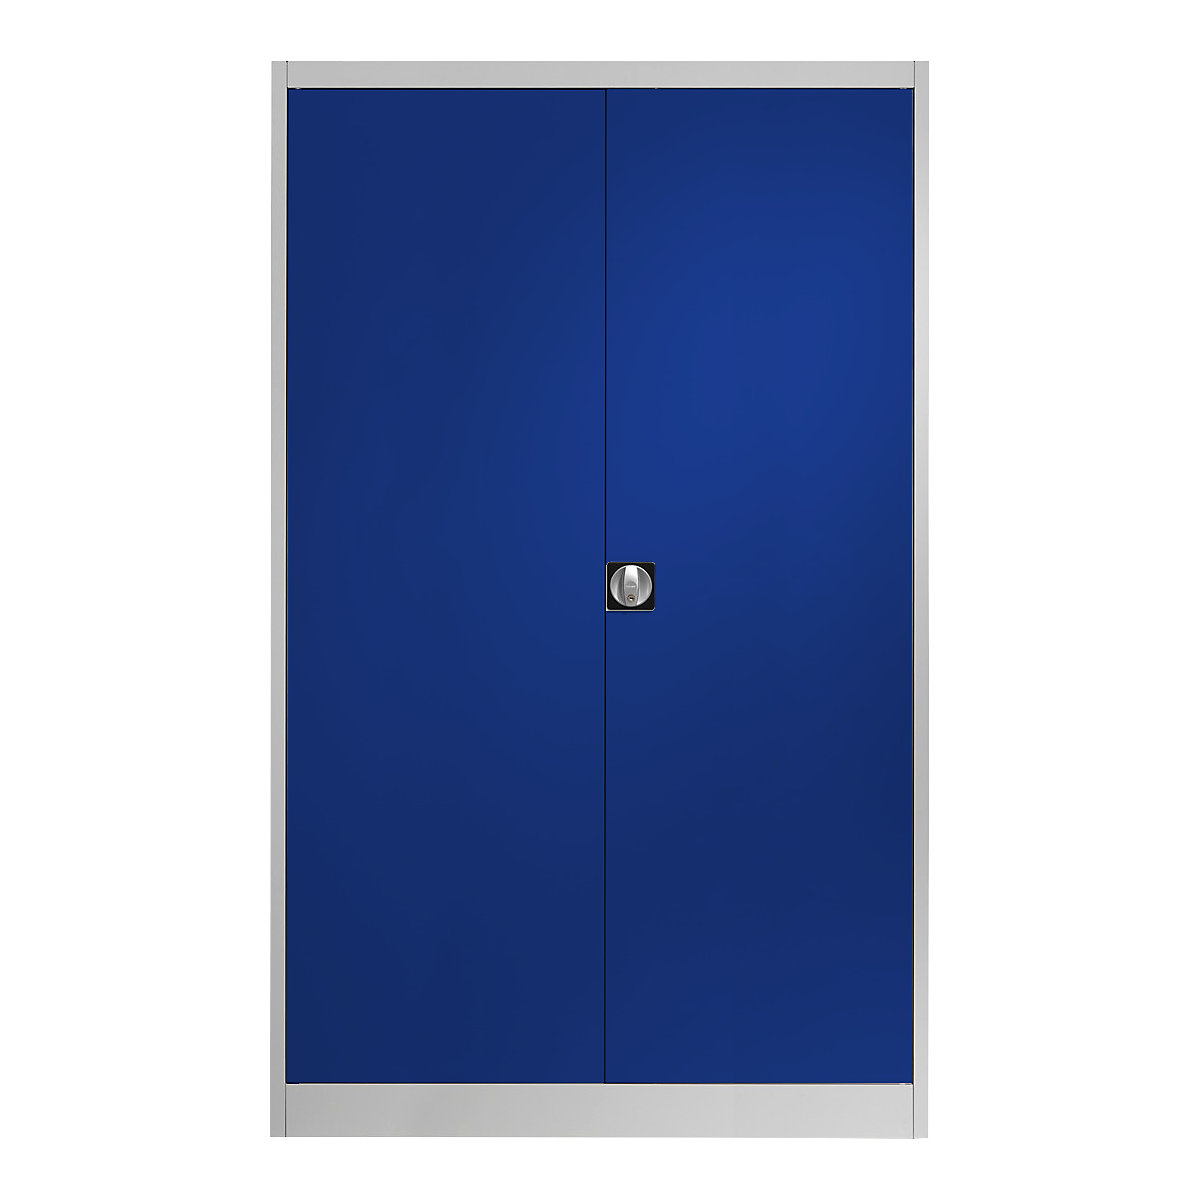 Čelični ormar s krilnim vratima – mauser, 4 police, širina 1200 mm, u svijetlosivoj / ultramarin boji, vanjska dubina 420 mm-9